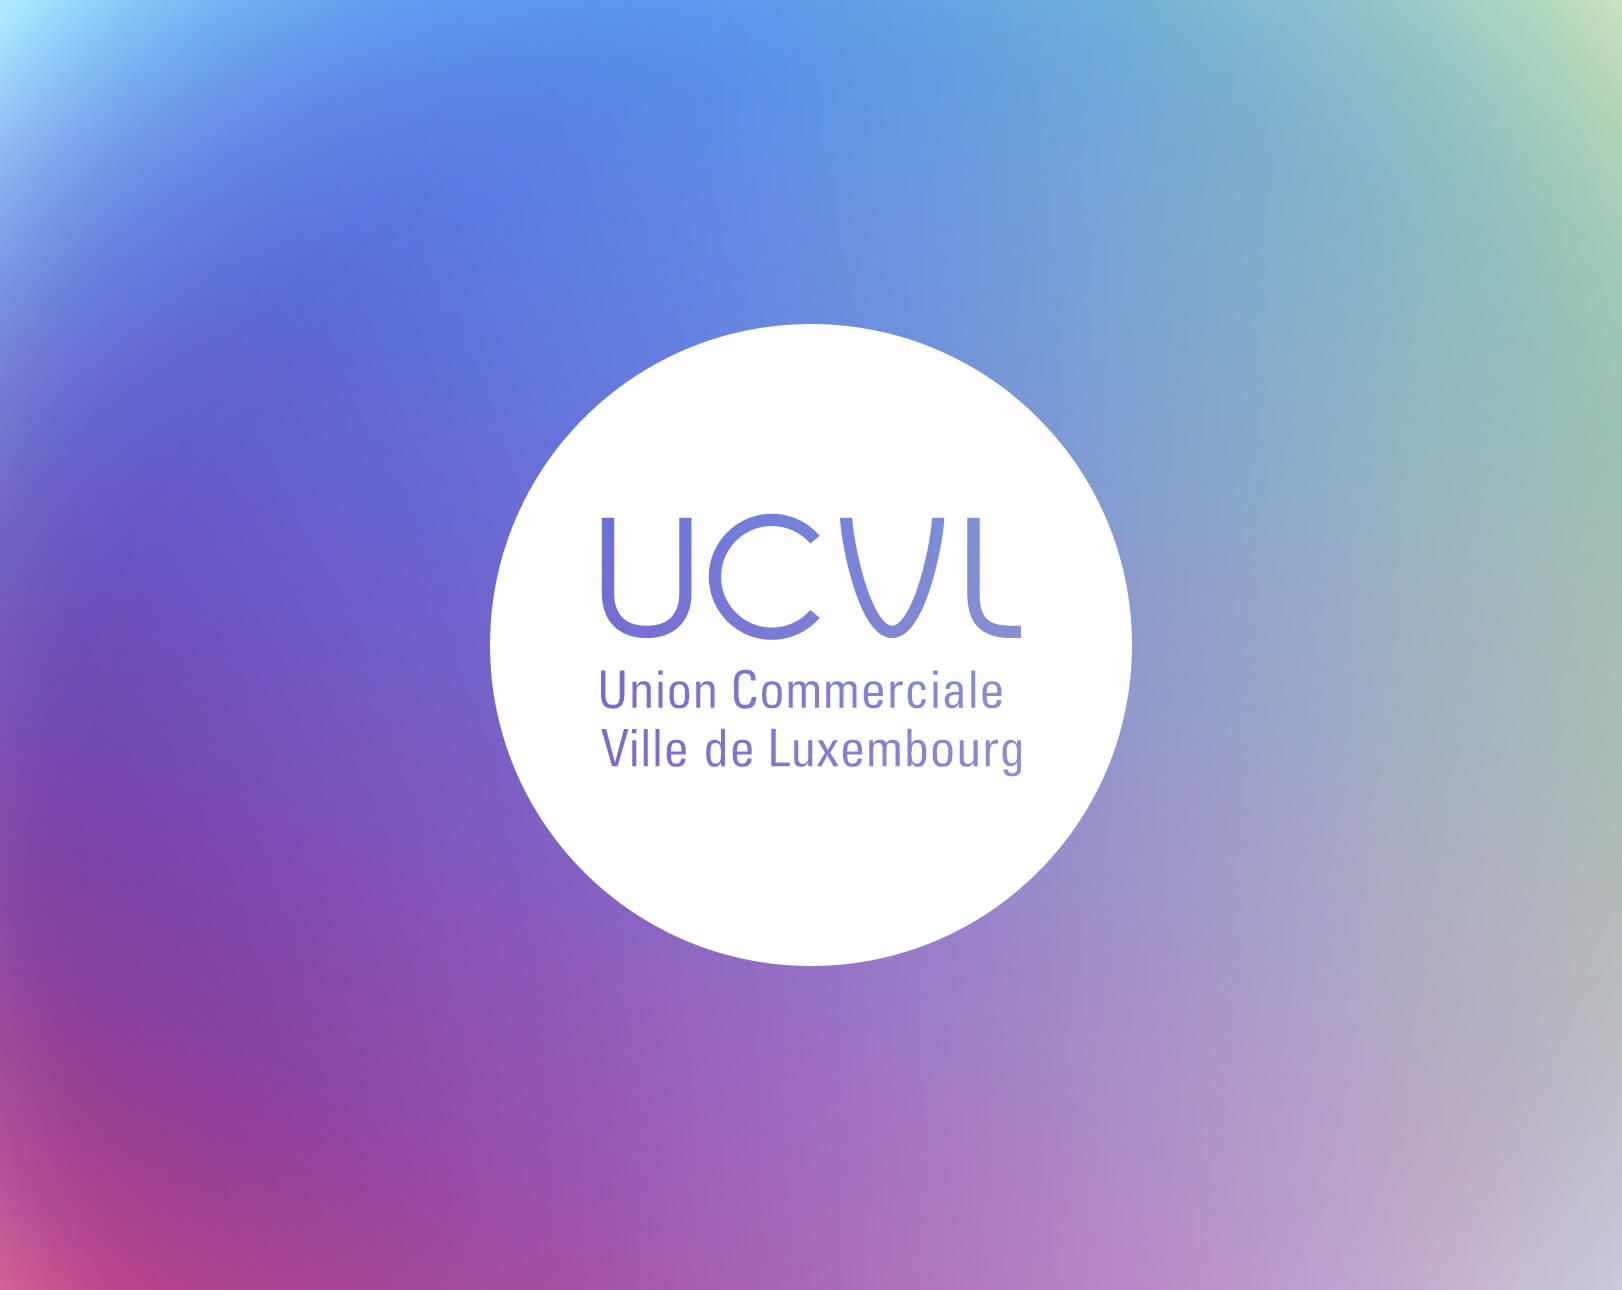 Mise en situation du logo de l'UCVL dans l'univers visuel réalisé pour l'invitation à l'AG et au rapport d'activité